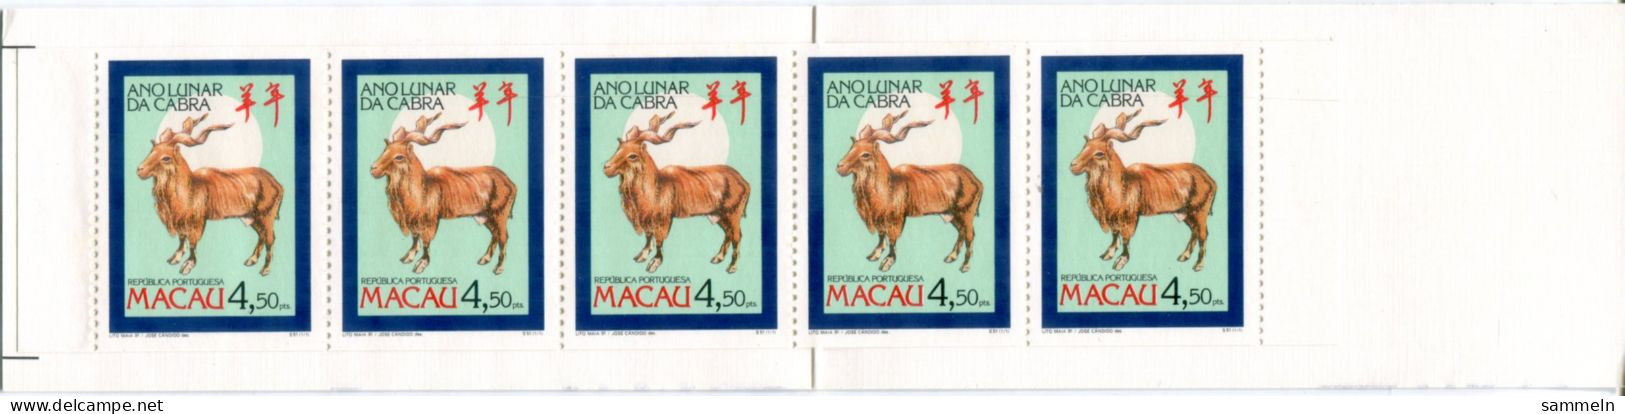 MACAO 667 C MH Mnh - Chinesisches Jahr Des Schafes, Chinese Year Of The Sheep, Année Chinoise Du Mouton - MACAU - Markenheftchen